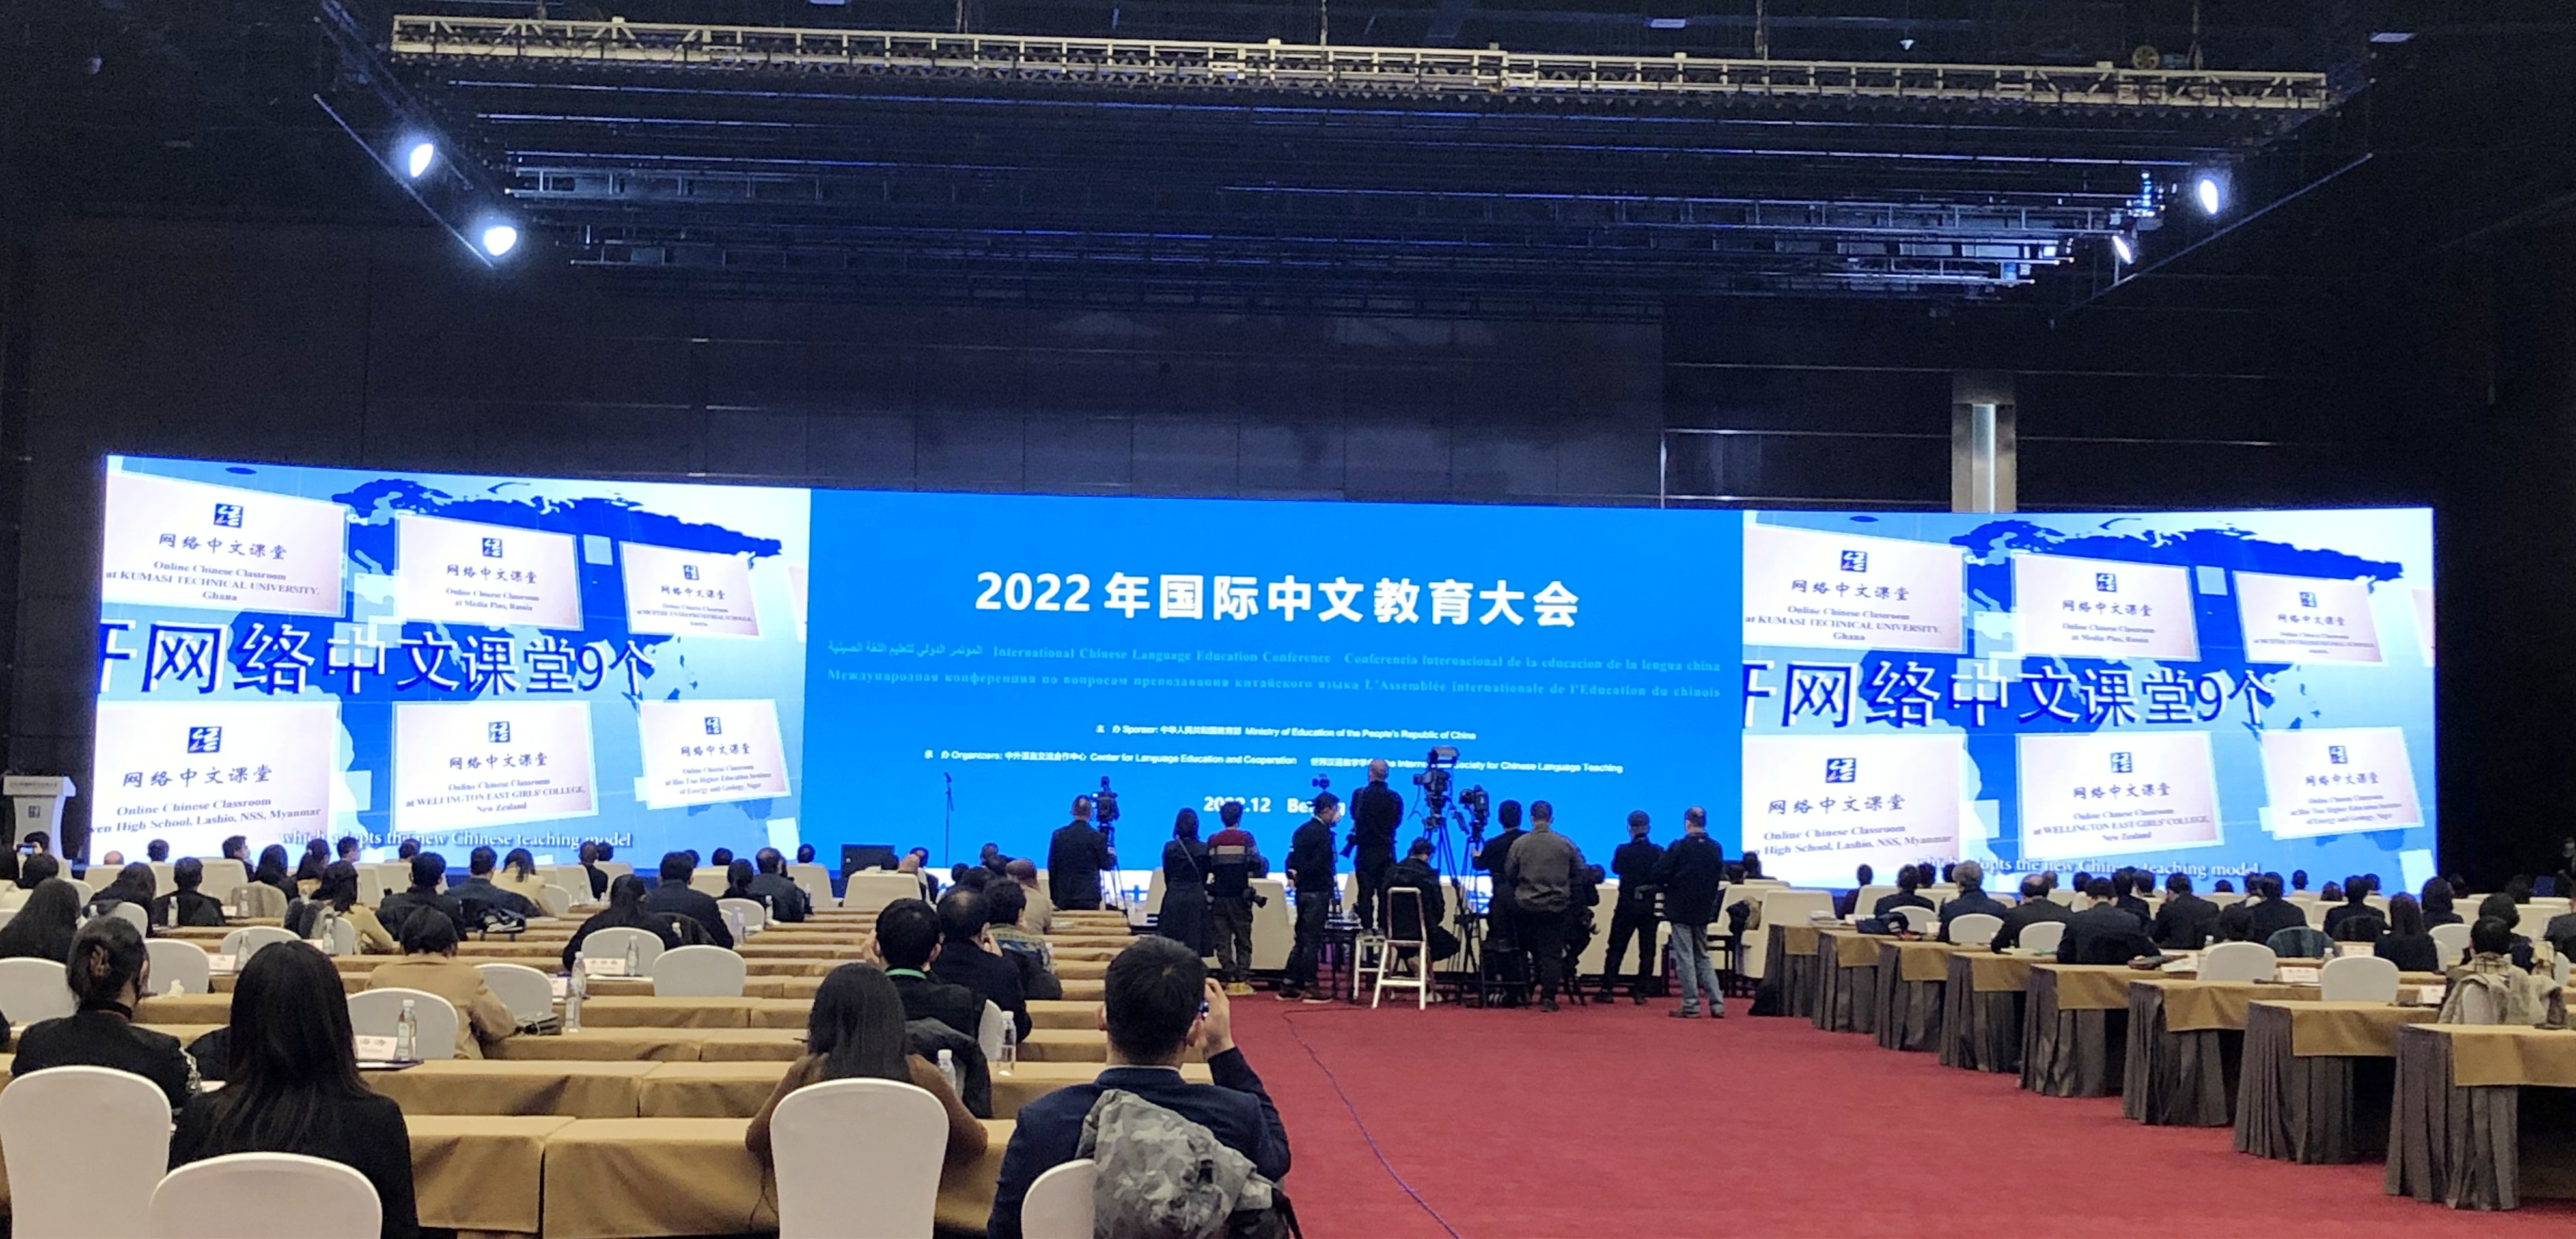 滕和显会长受邀出席2022国际中文教育大会开幕式